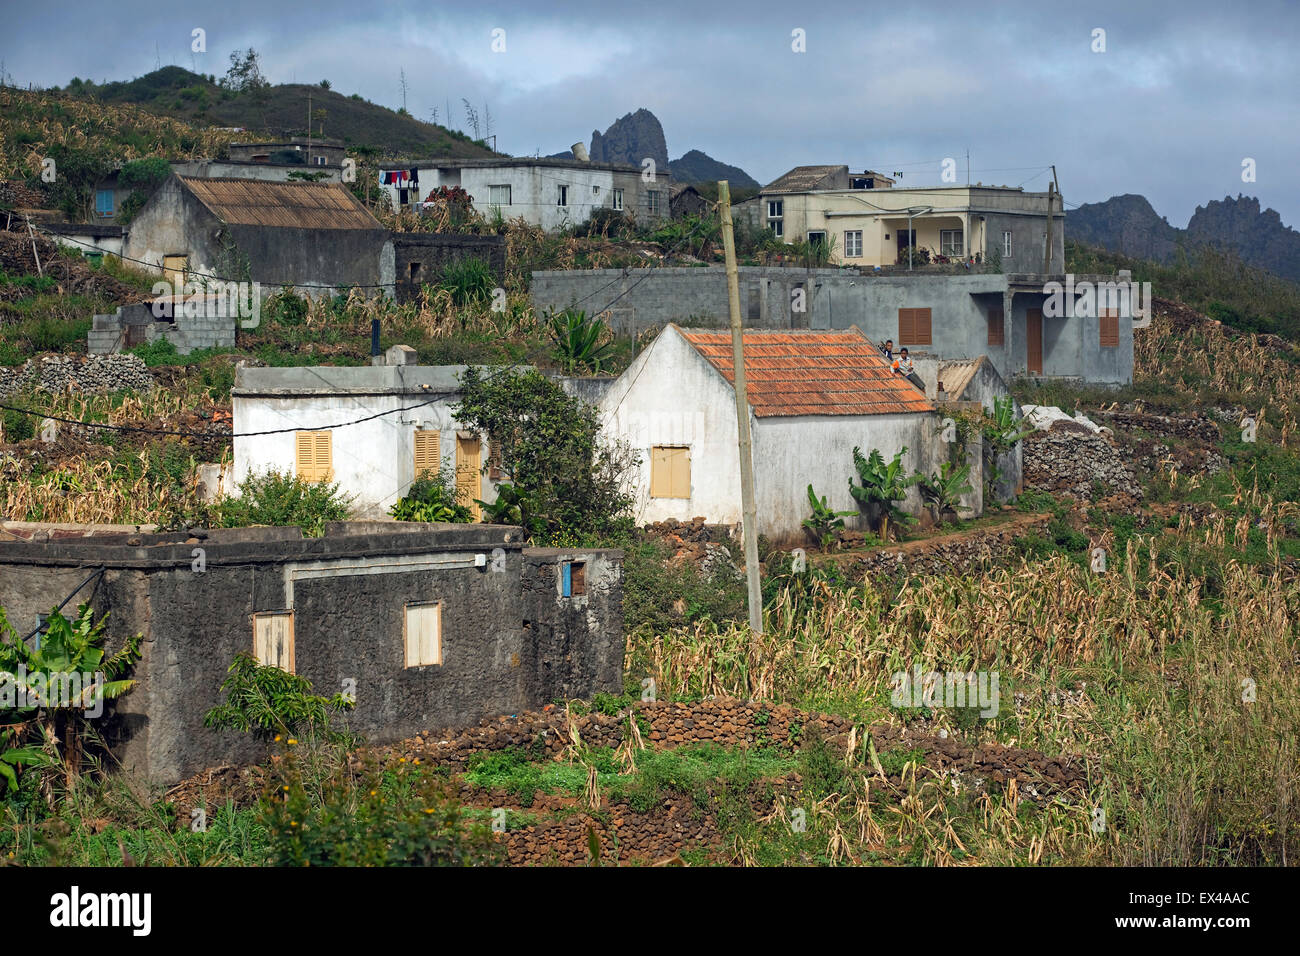 Village rural sur l'île de São Nicolau, Cap Vert / Cabo Verde, l'Afrique de l'Ouest Banque D'Images